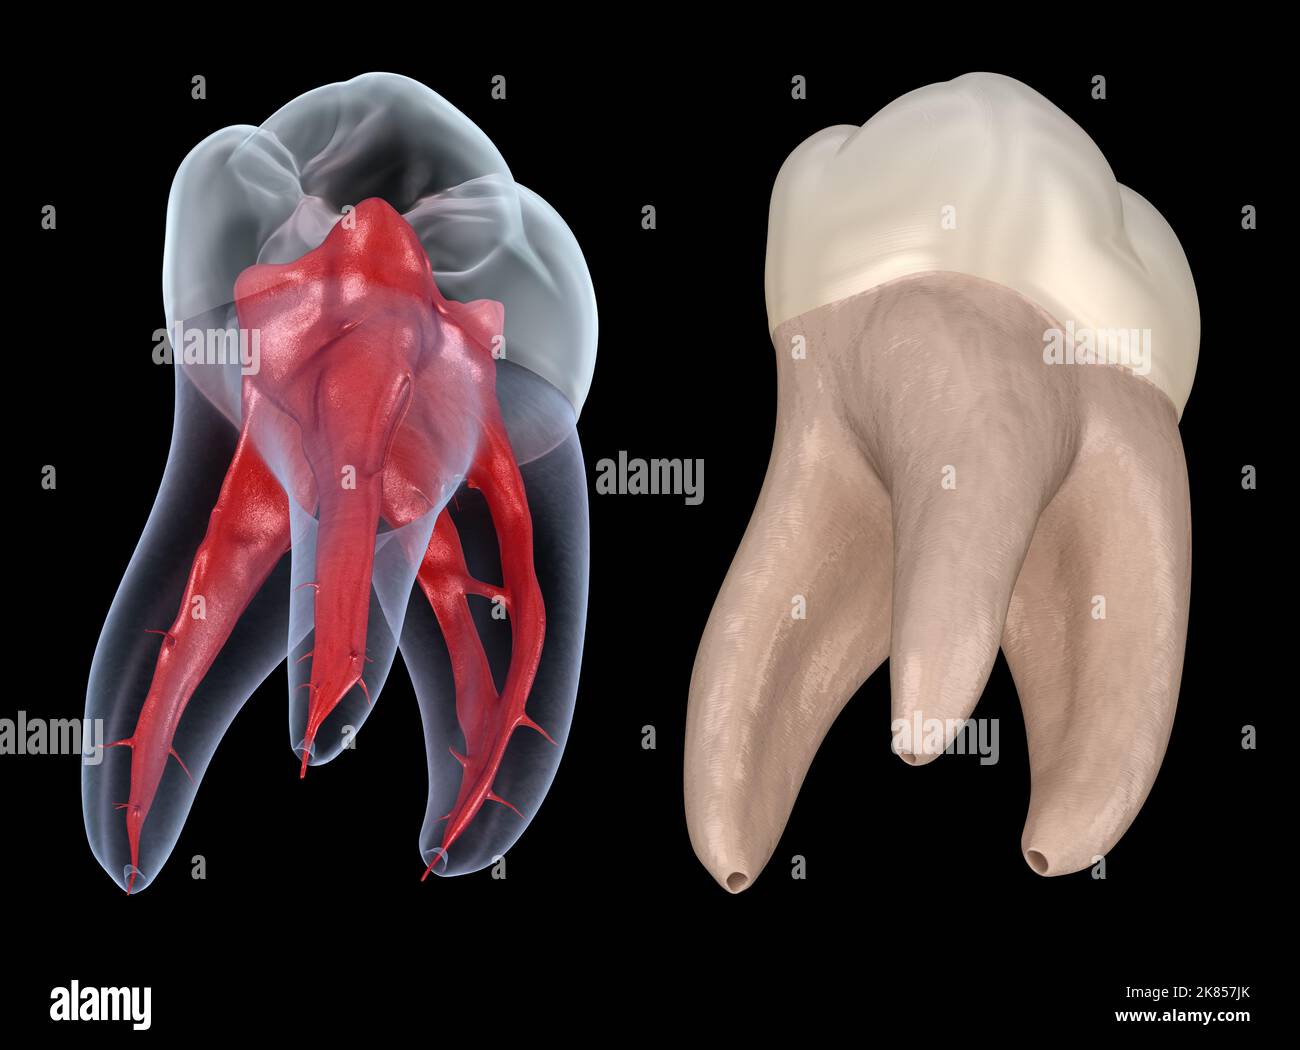 Anatomie de la racine dentaire - première dent molaire maxillaire. Illustration dentaire 3D précise sur le plan médical Banque D'Images